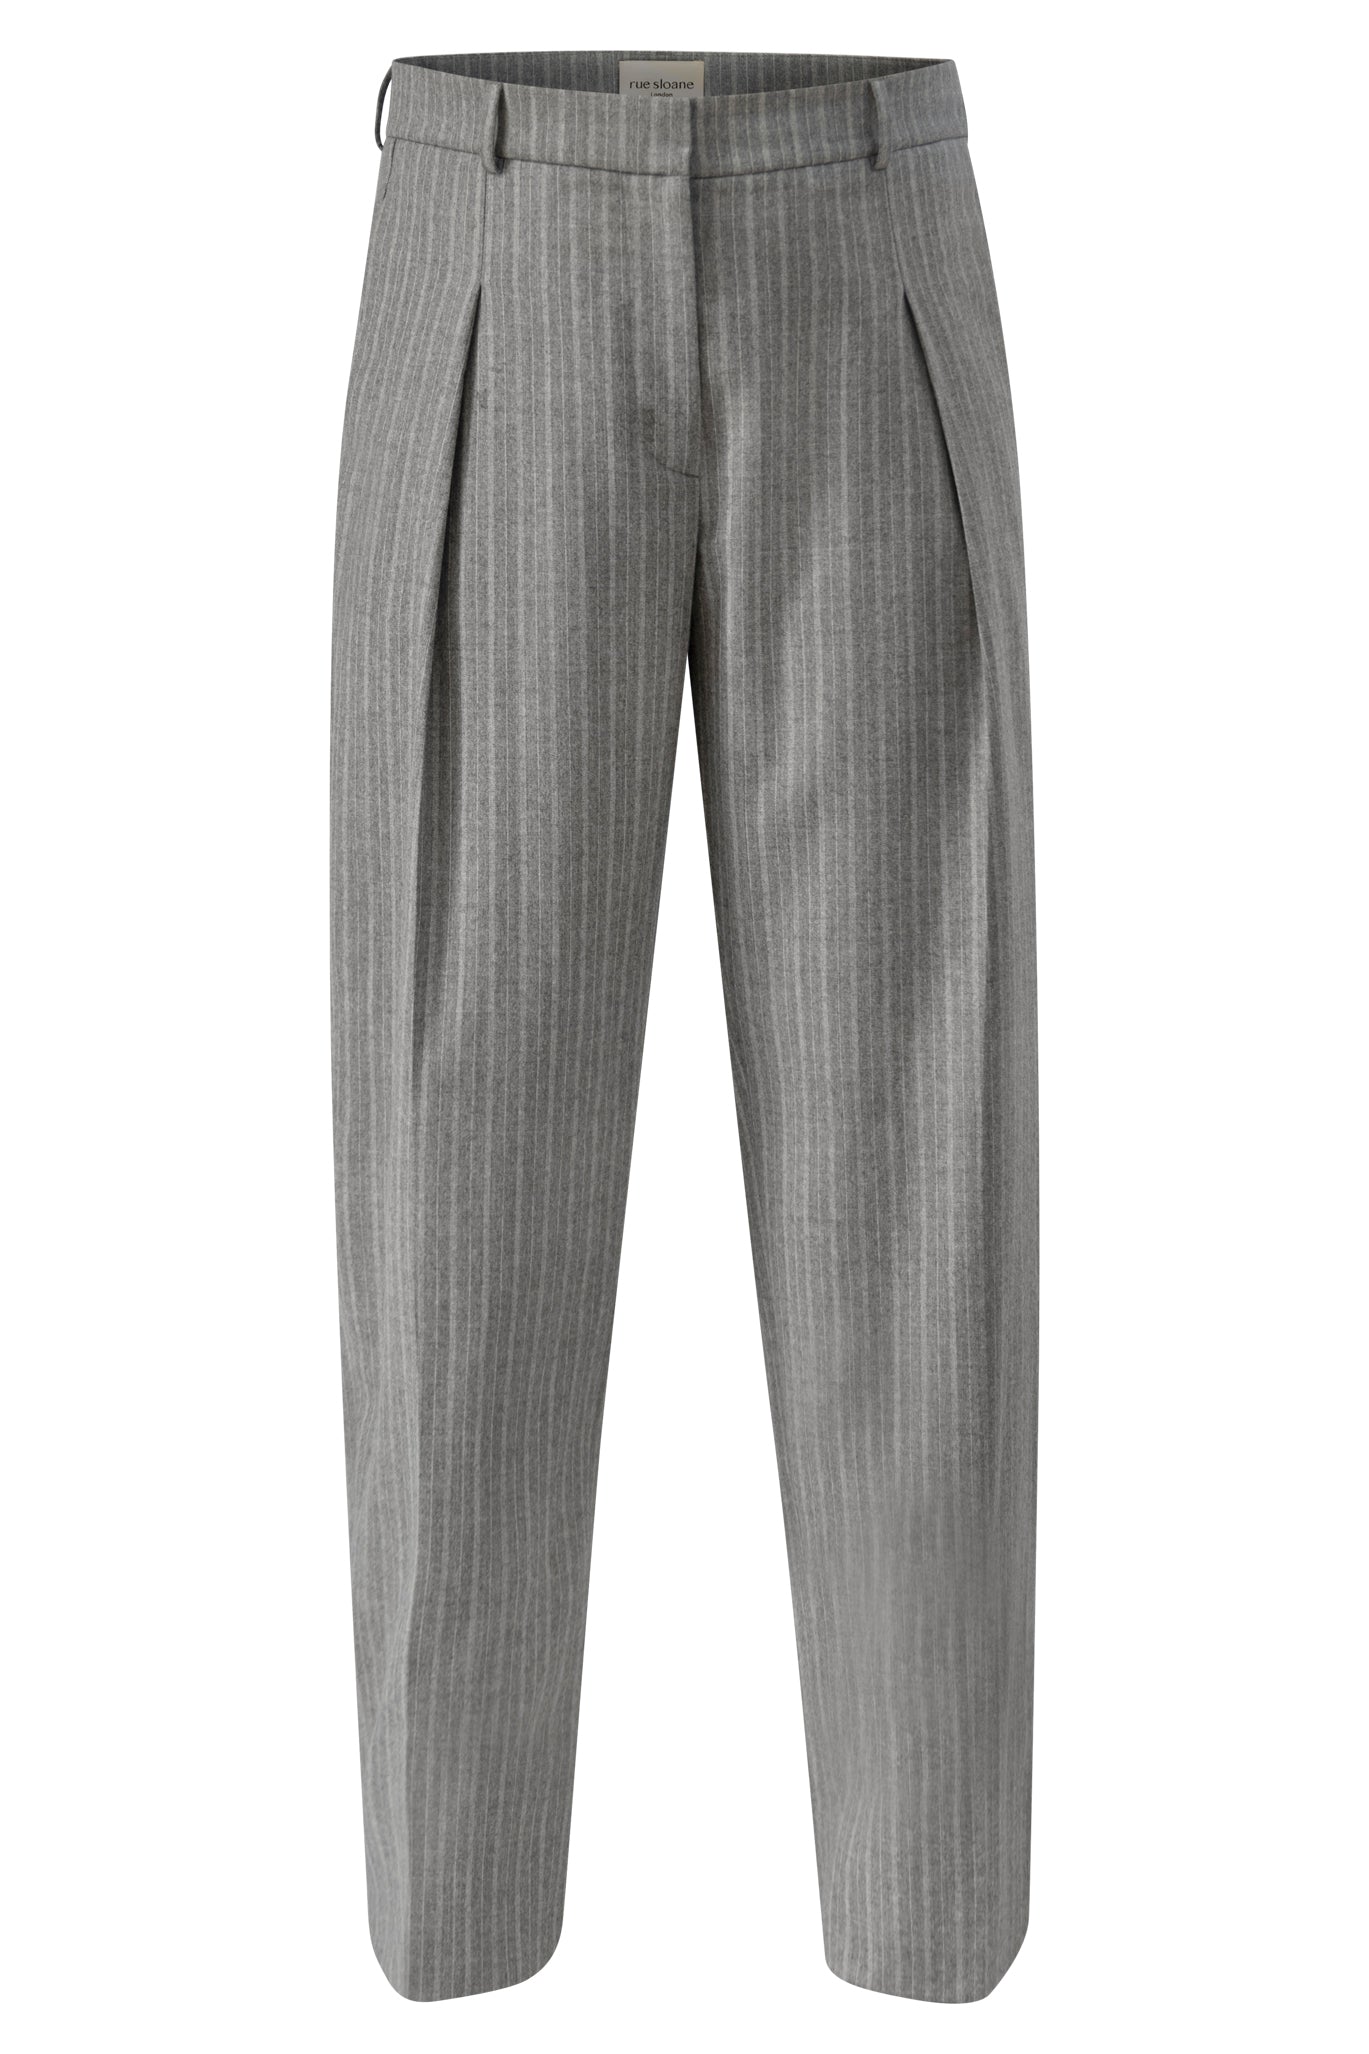 London Trousers in Italian Grey – Rue Sloane